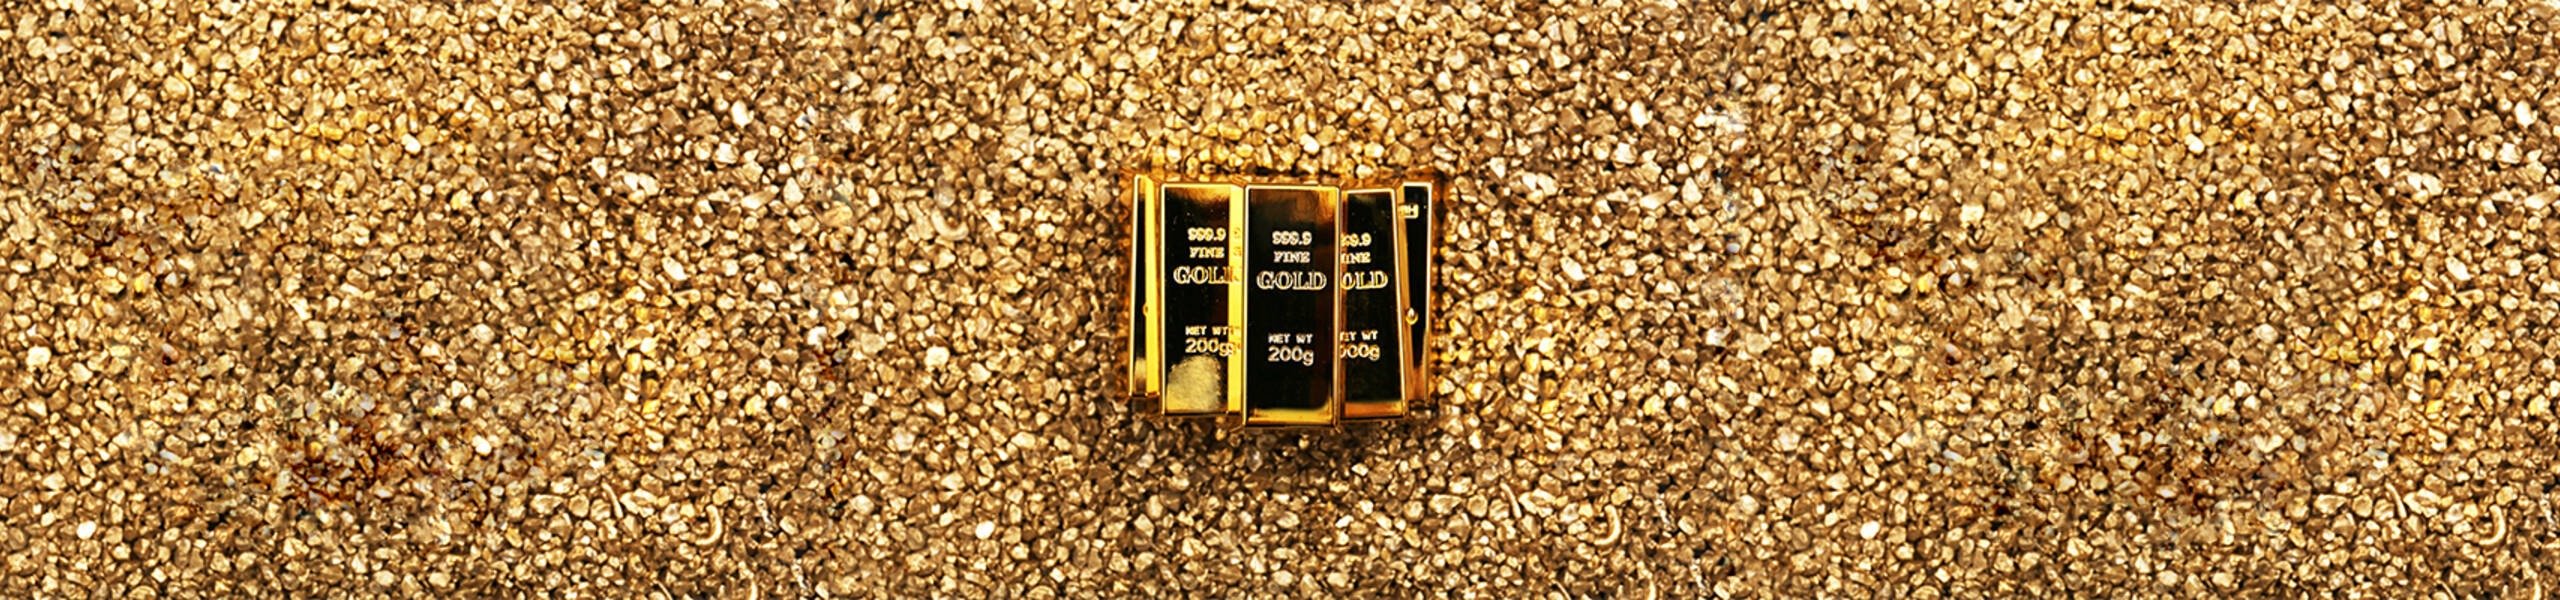 Oro: zona de demanda compradora sólida en 1261.86